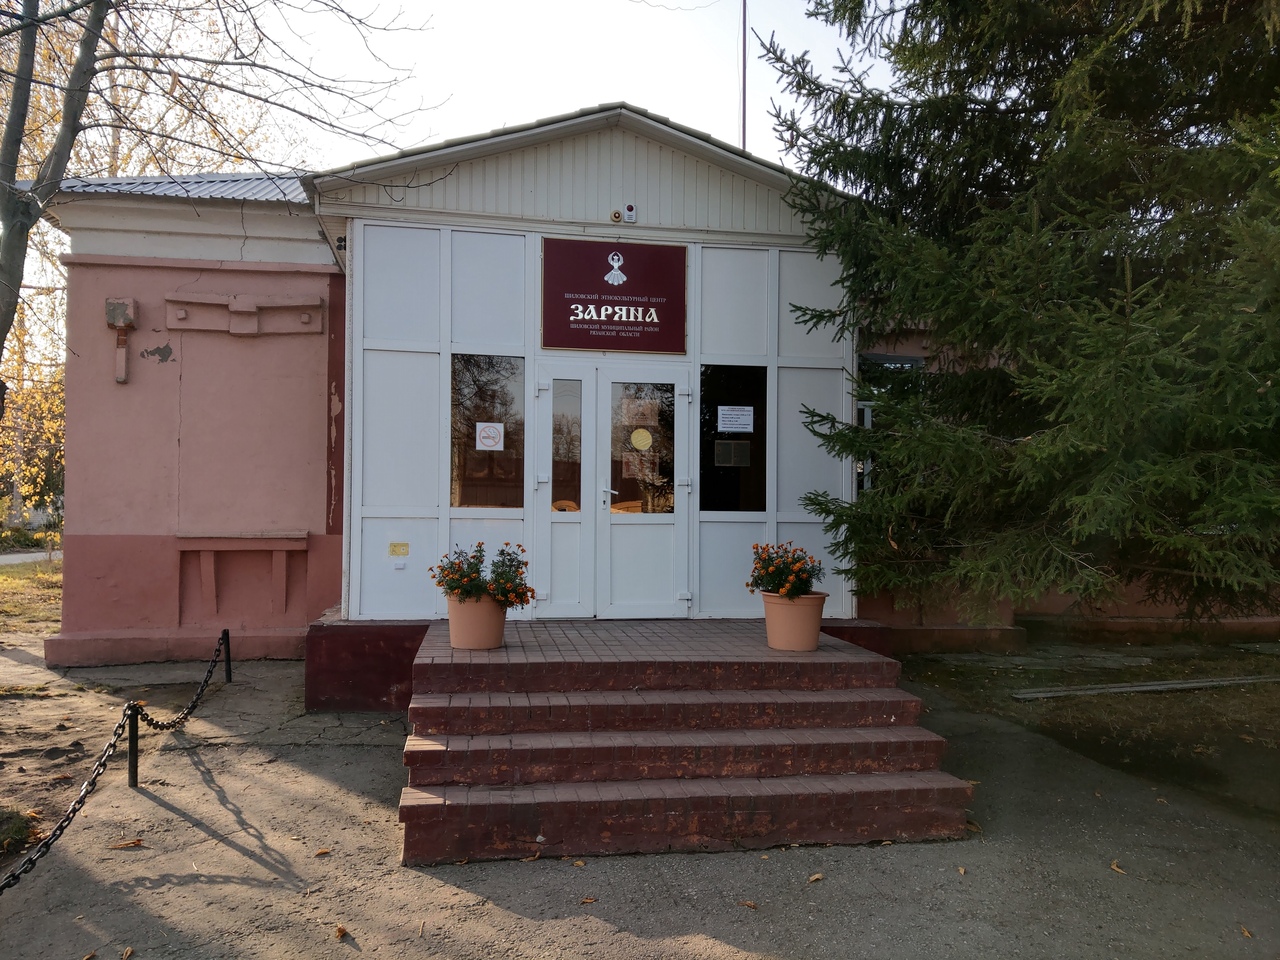 Шиловский районный этнокультурный центр «Заряна»